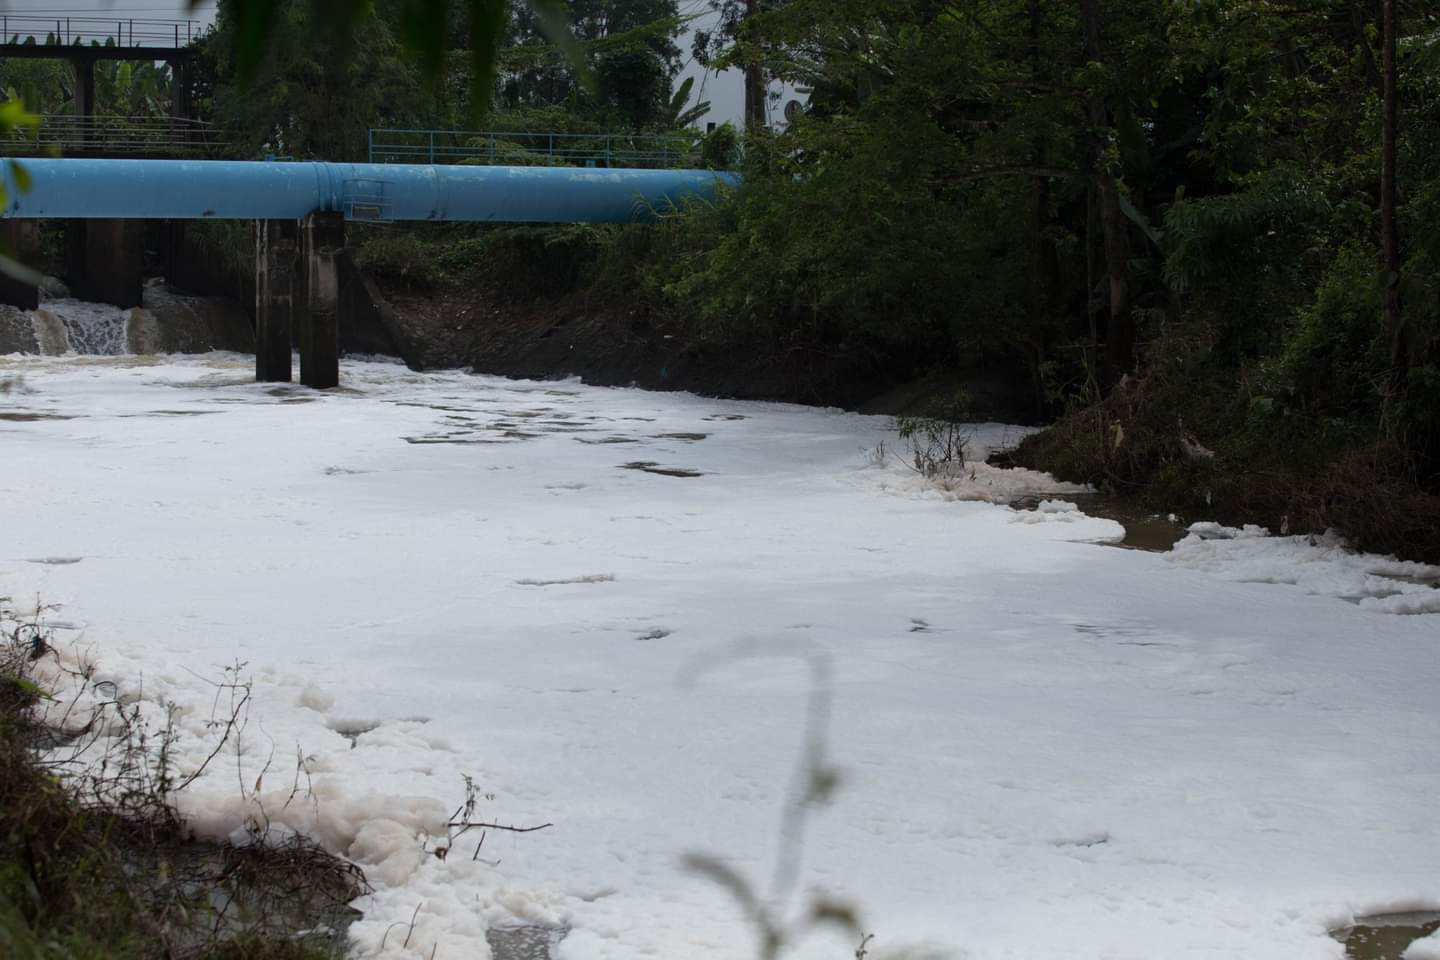 Đập cầu Đỏ trên sông Dinh đi qua địa bàn TP. Bà Rịa xuất hiện bọt trắng xóa vào ngày 2/11. Ảnh: MINH ROSE